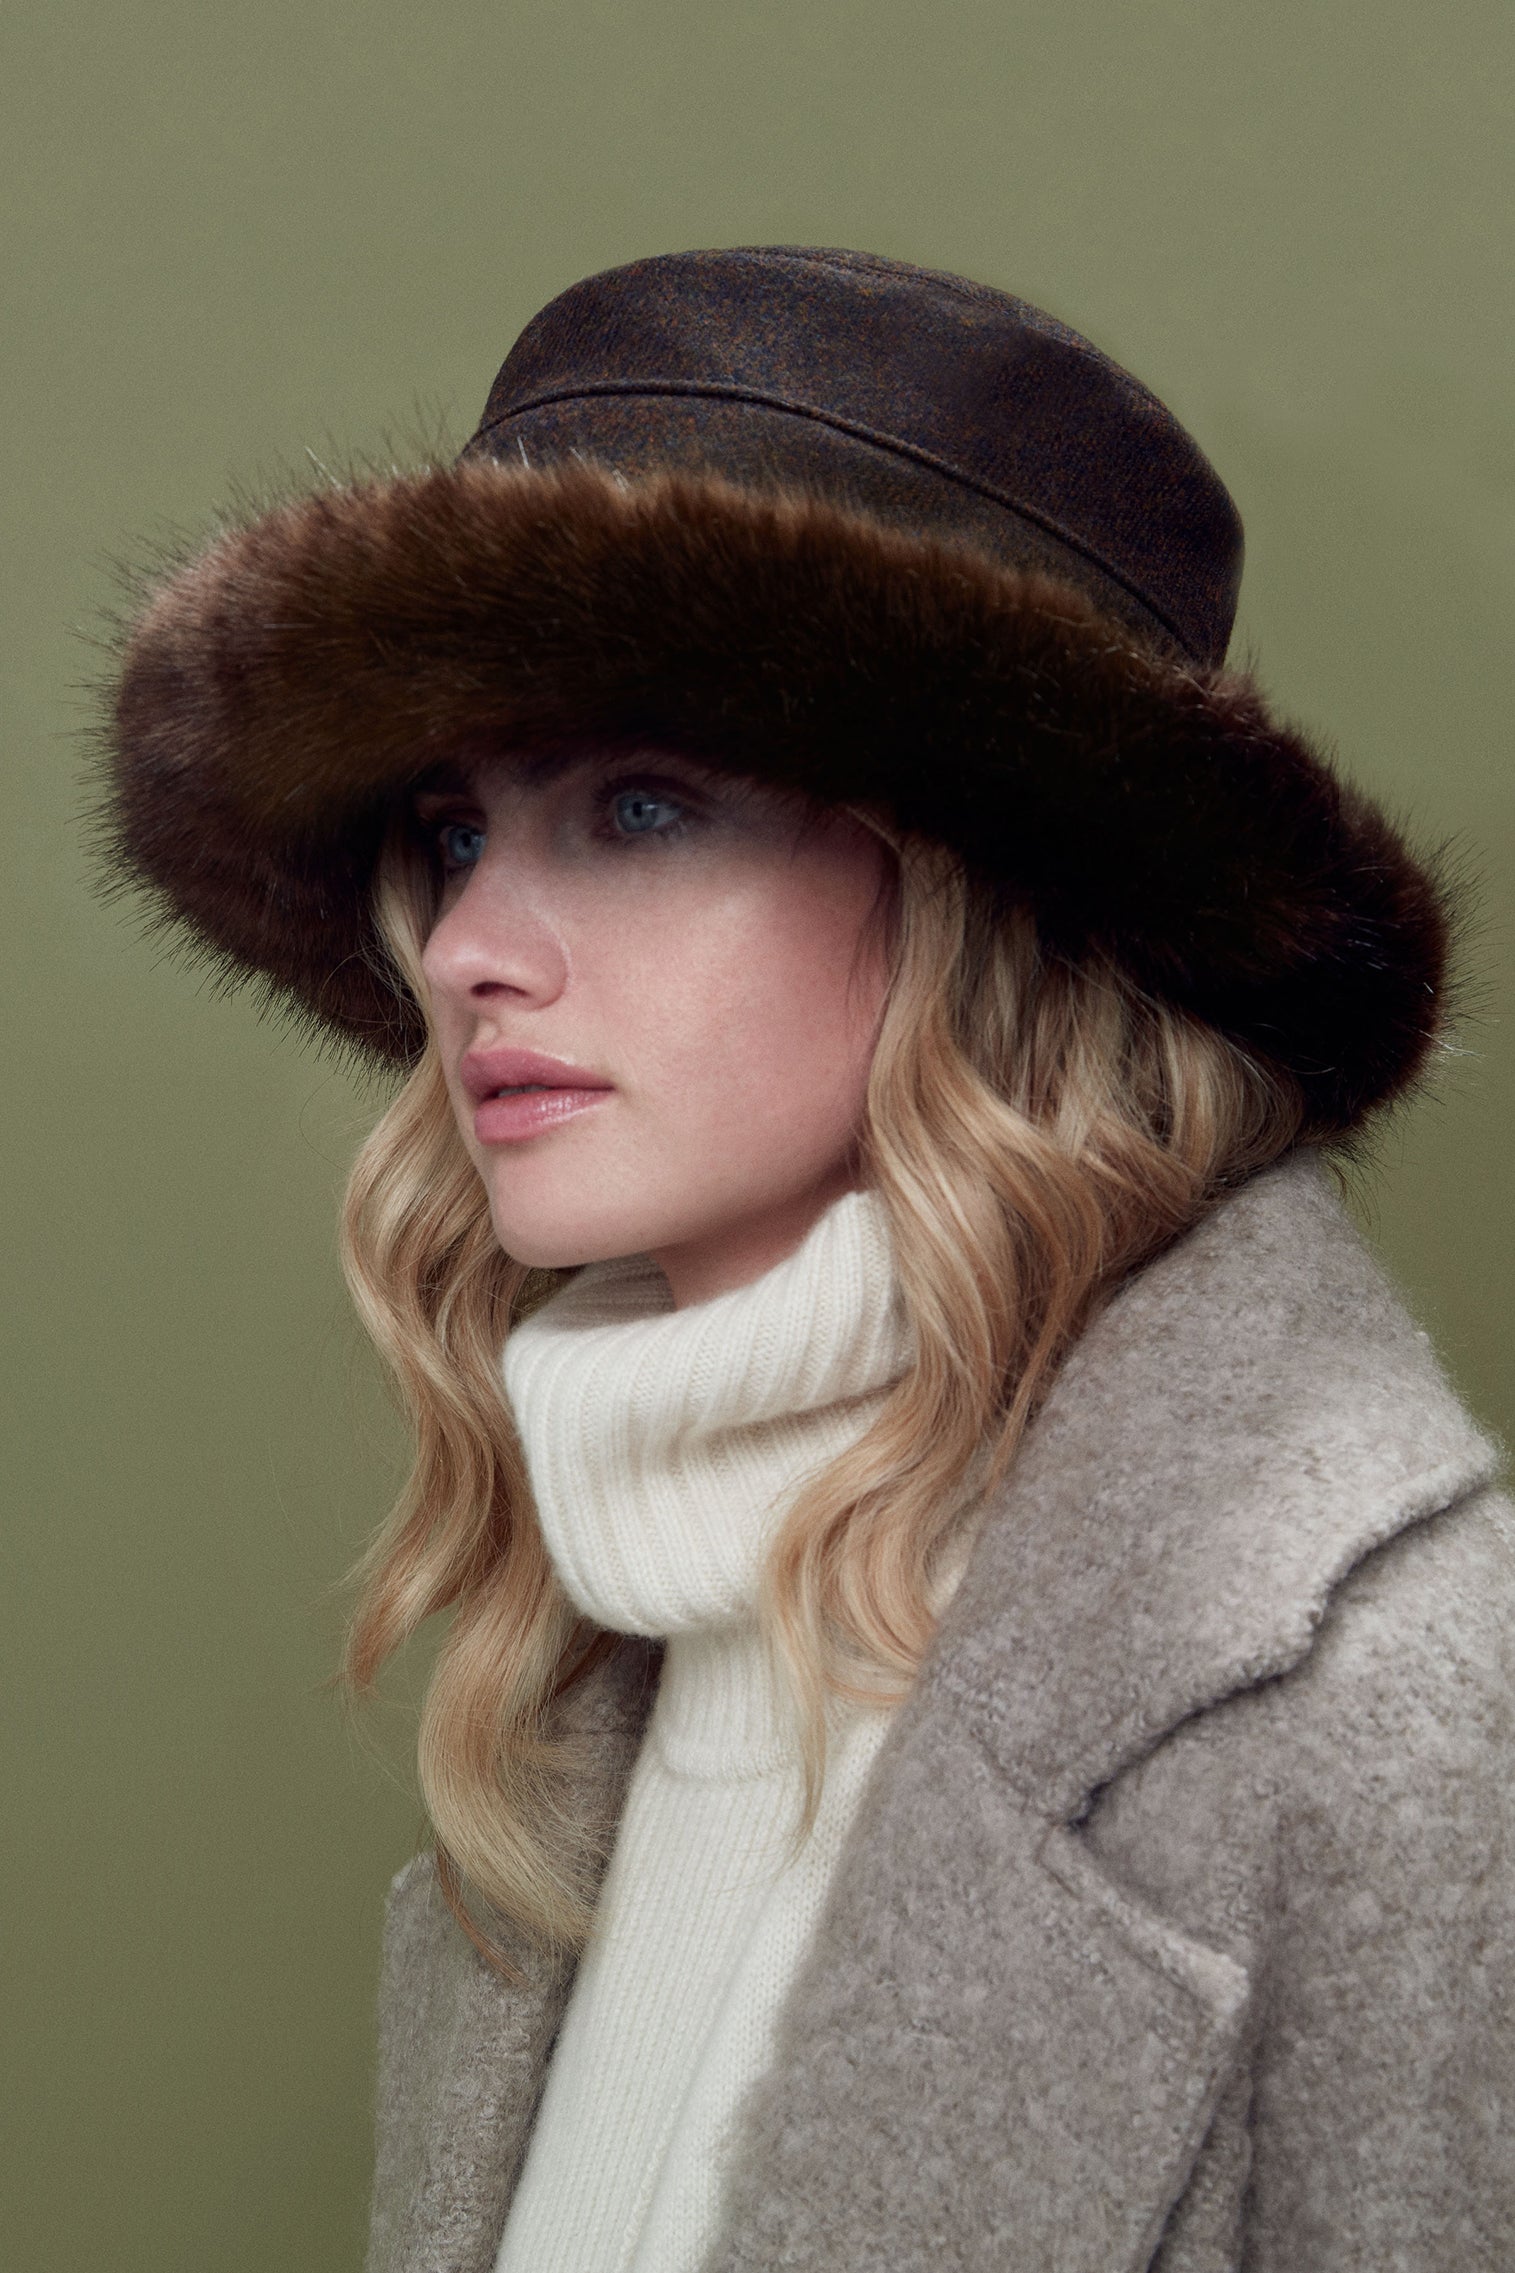 Estate Faux Fur Hat - All Ready to Wear - Lock & Co. Hatters London UK